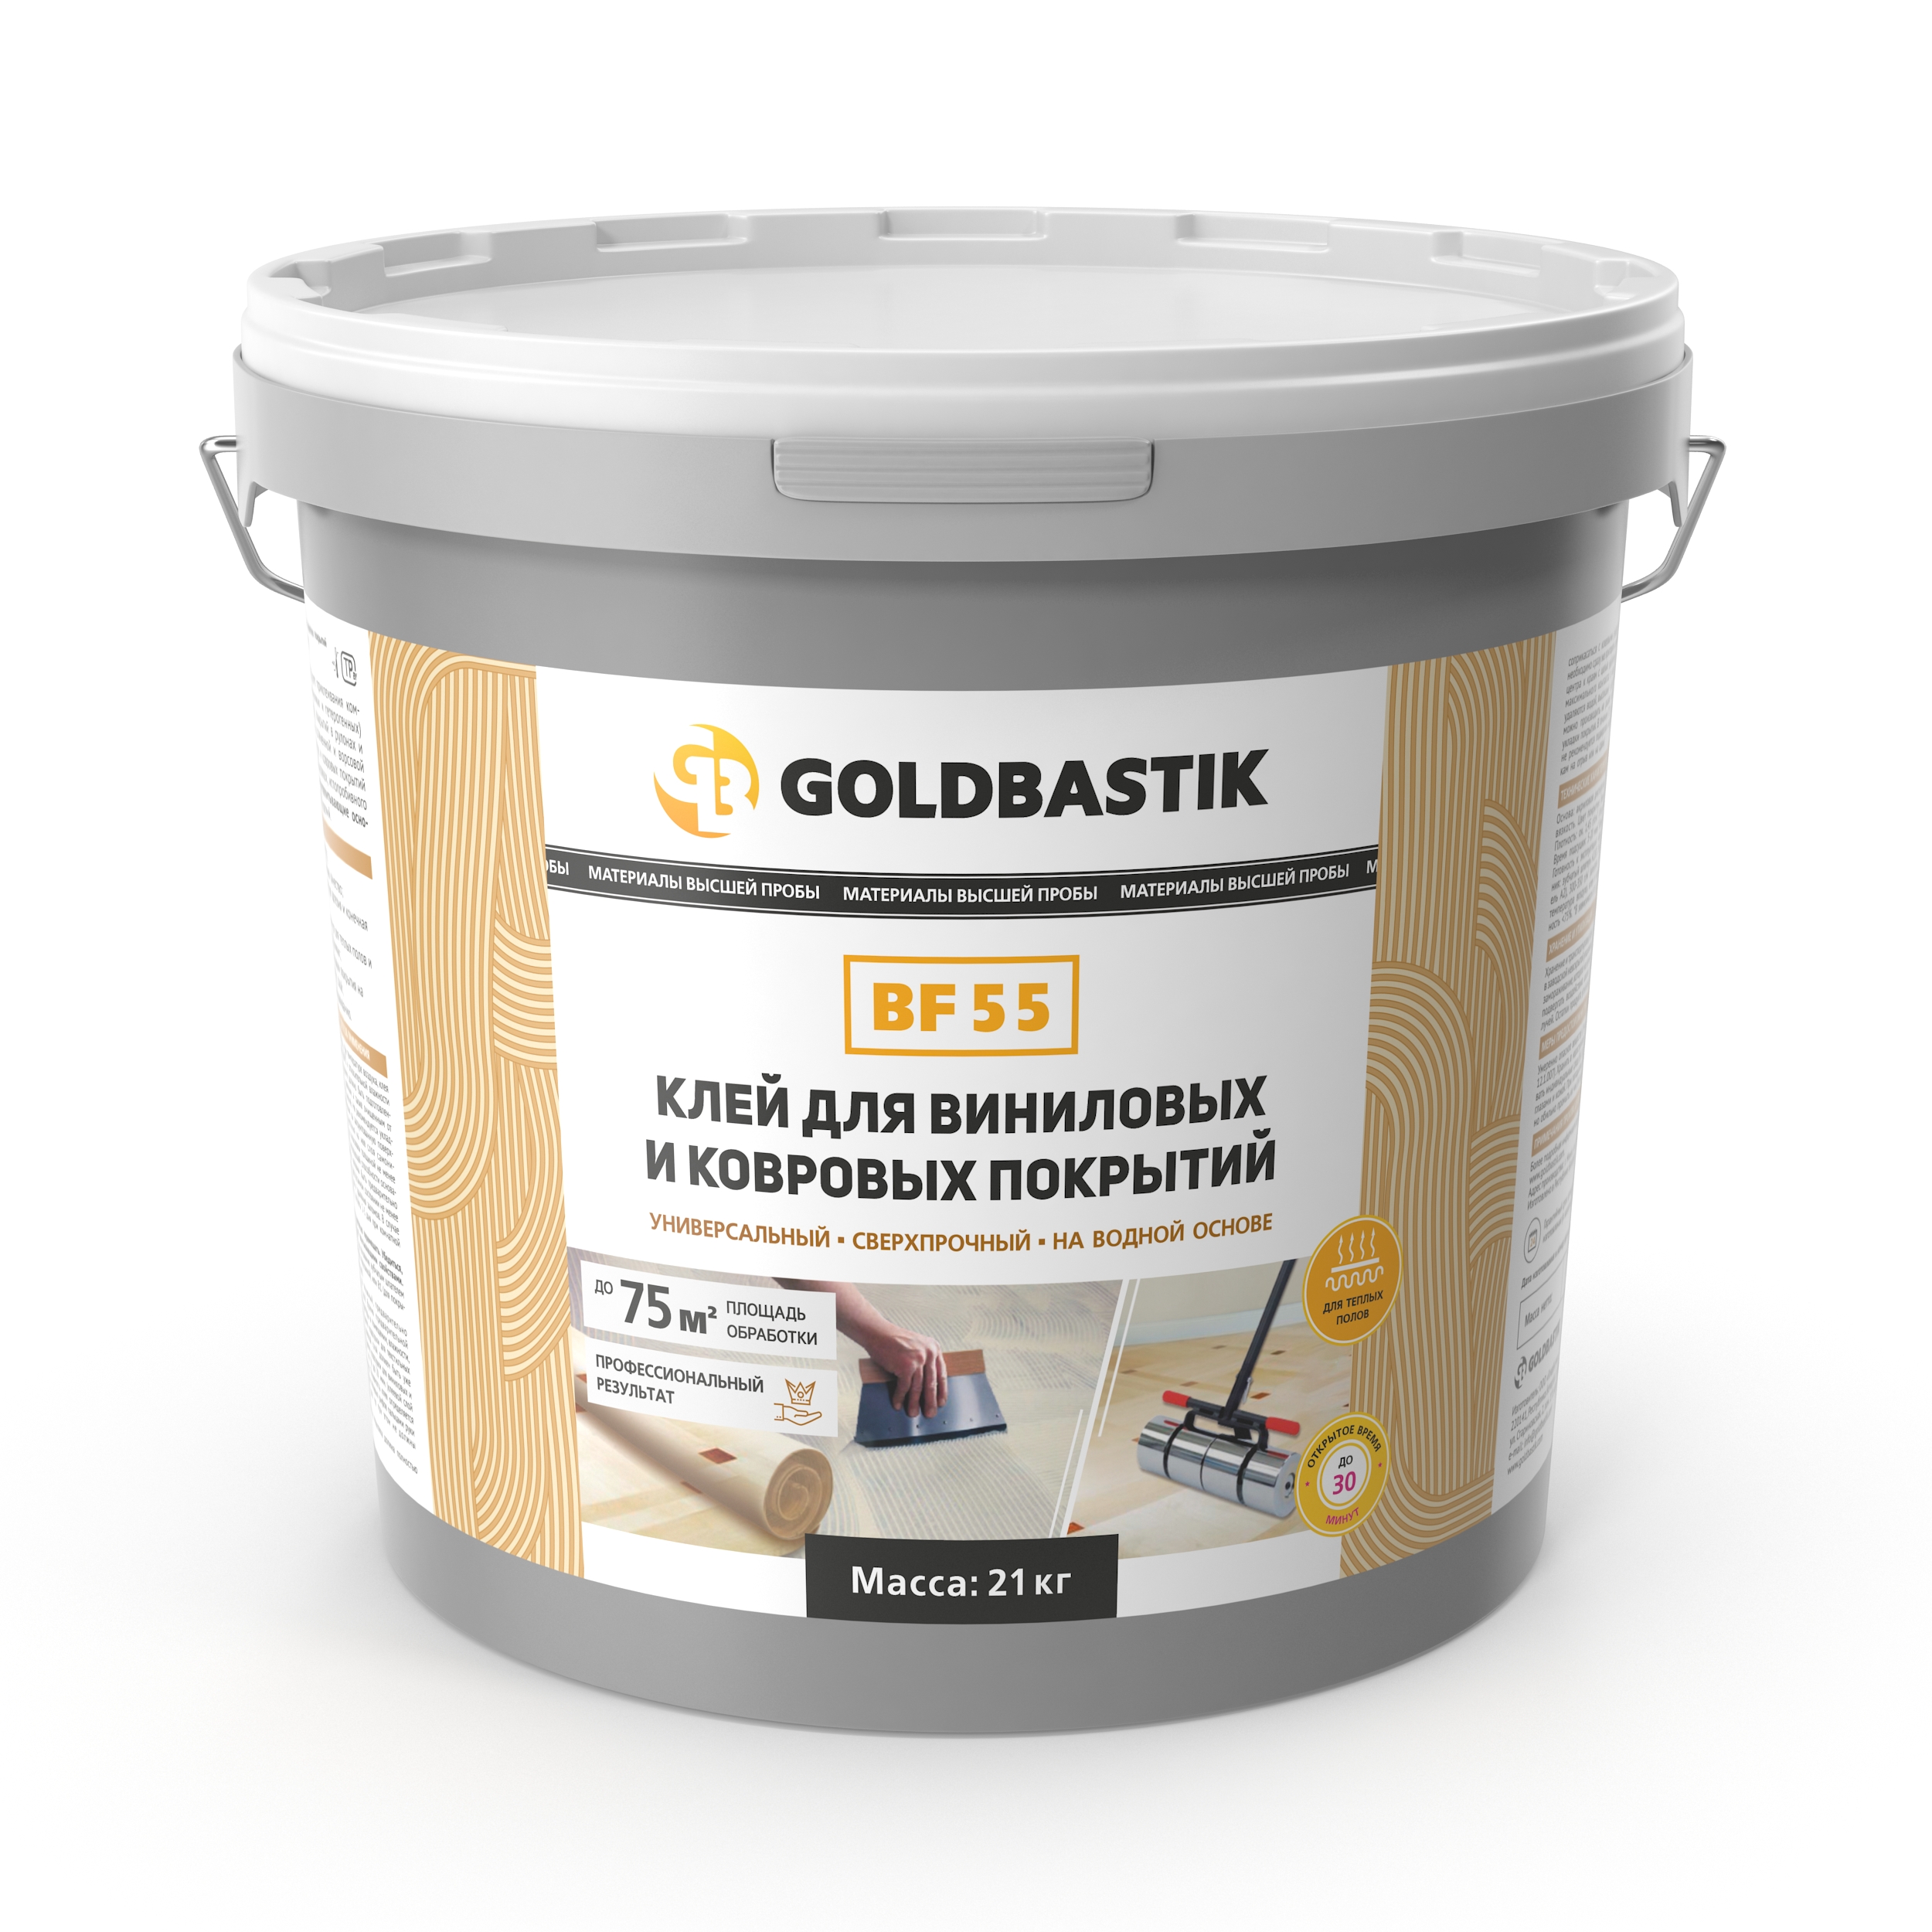 Клей для виниловых и ковровых покрытий Goldbastik BF 55. 21кг. РБ купить с доставкой по Минску и области. Низкие цены.